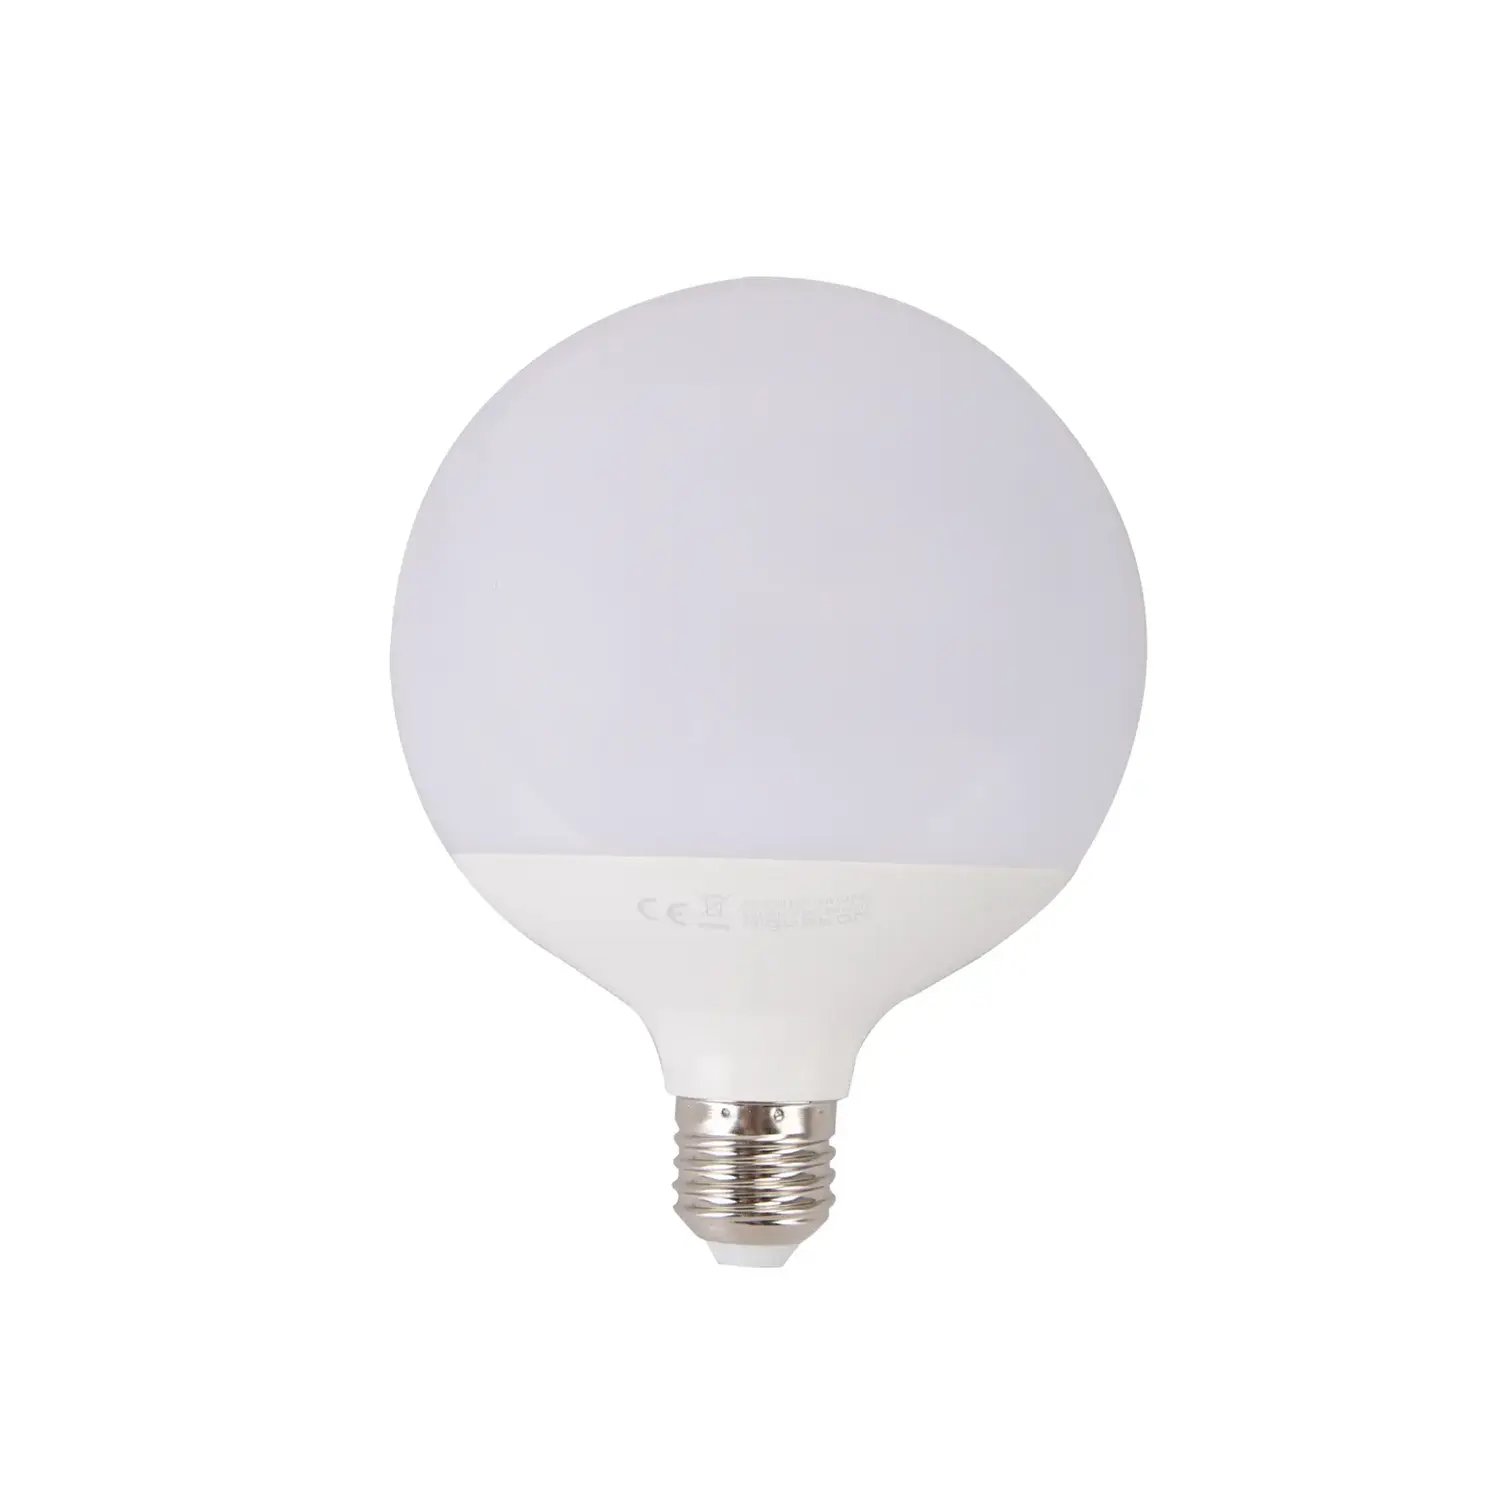 immagine del prodotto lampadina led globo lampadario A120 e27 20 watt bianco freddo